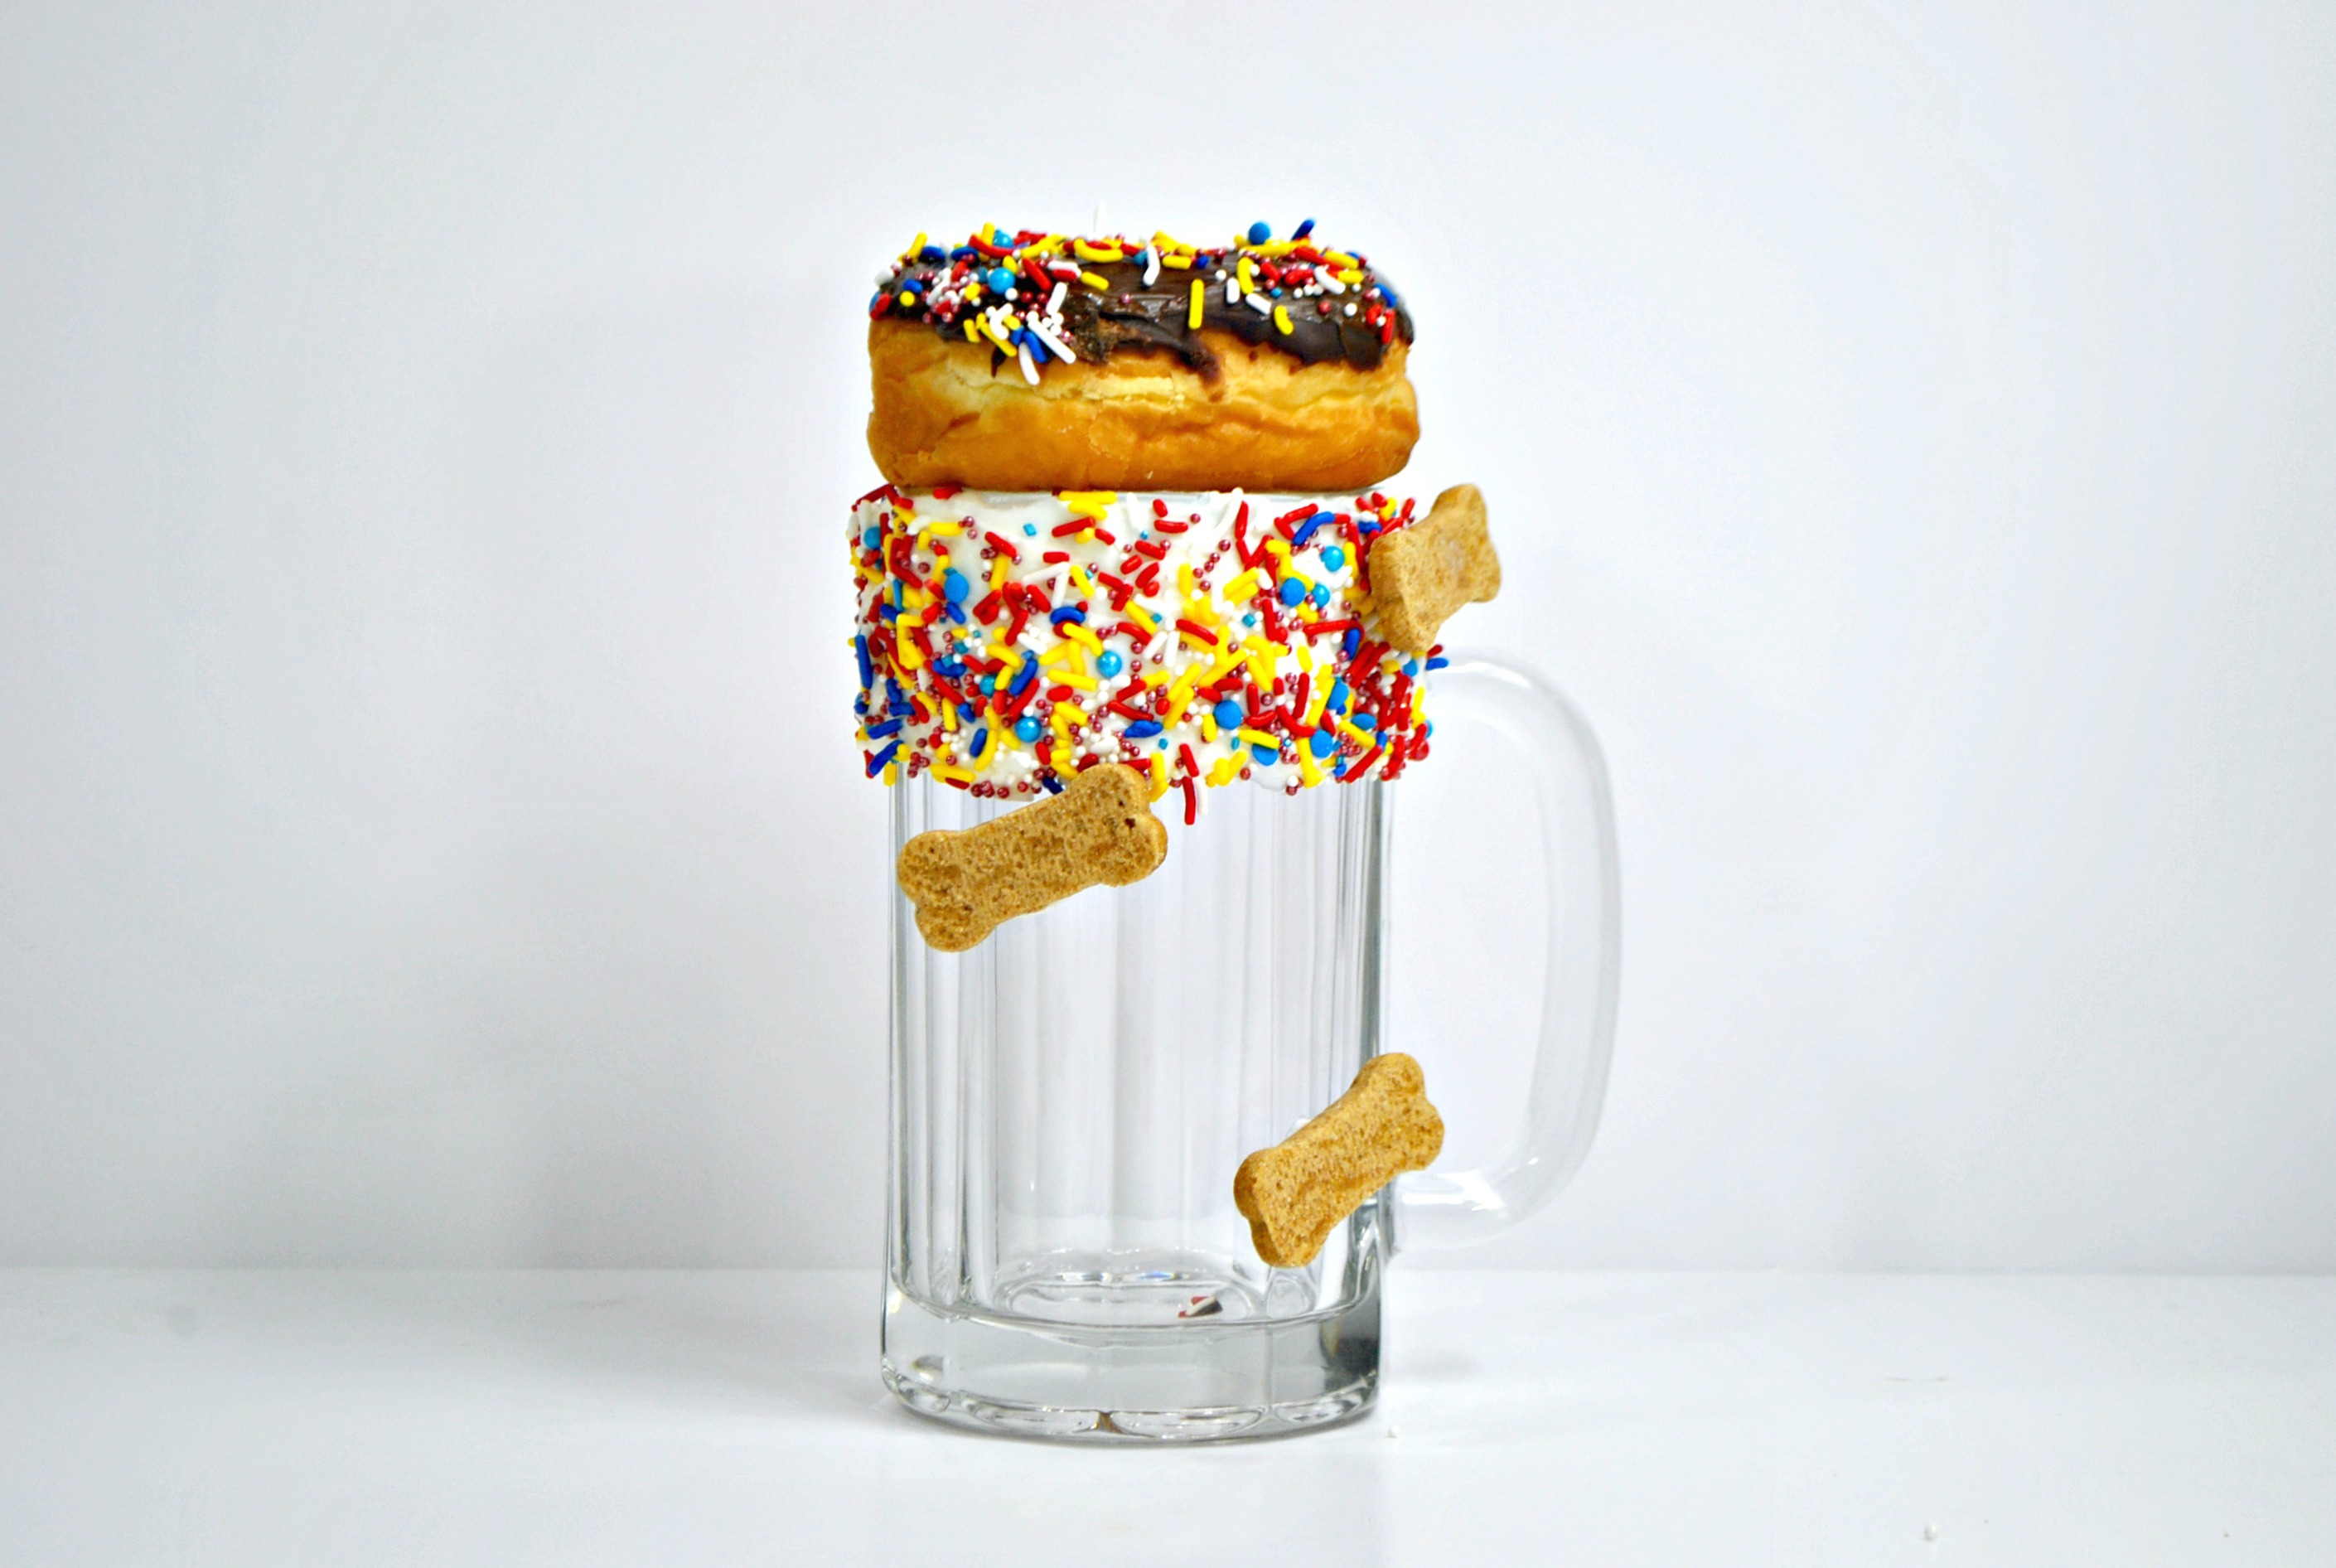 Slinky Dog Dash Milkshake - Inspired by the new Toy Story Land Ride